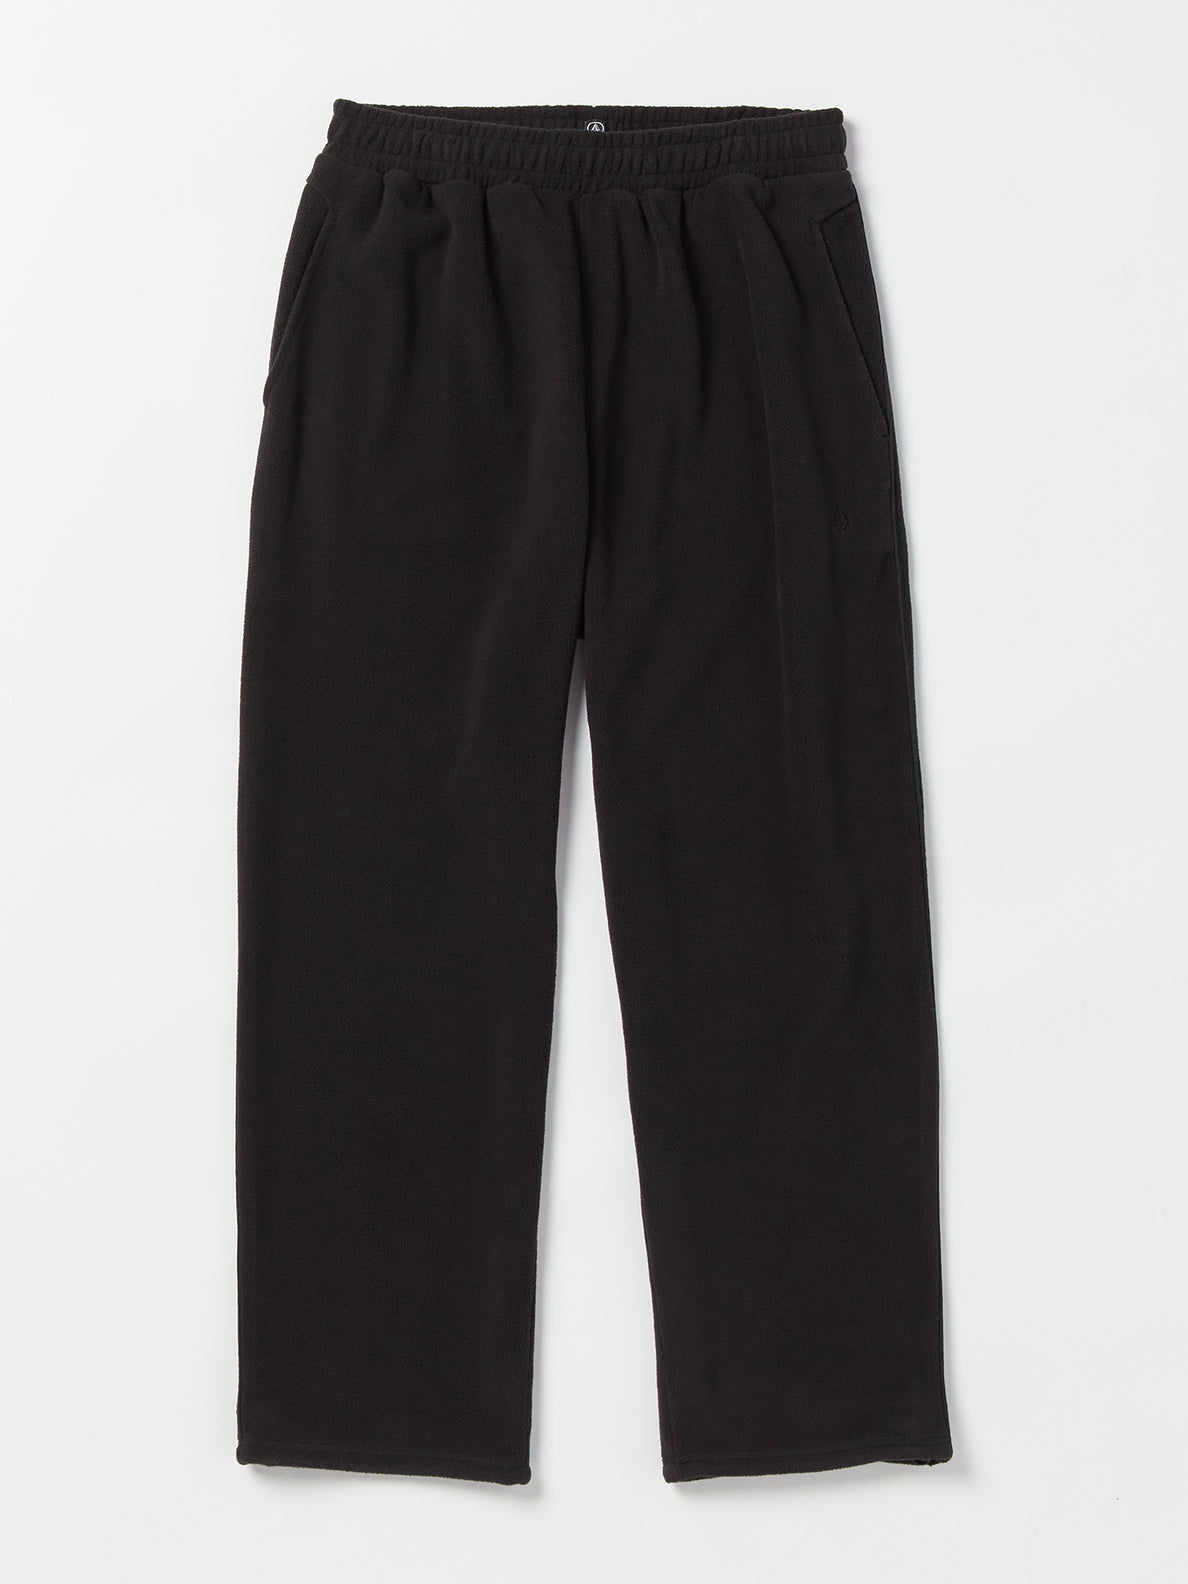 Bowered Light Fleece Pants - Black (A1232302_BLK) [F]